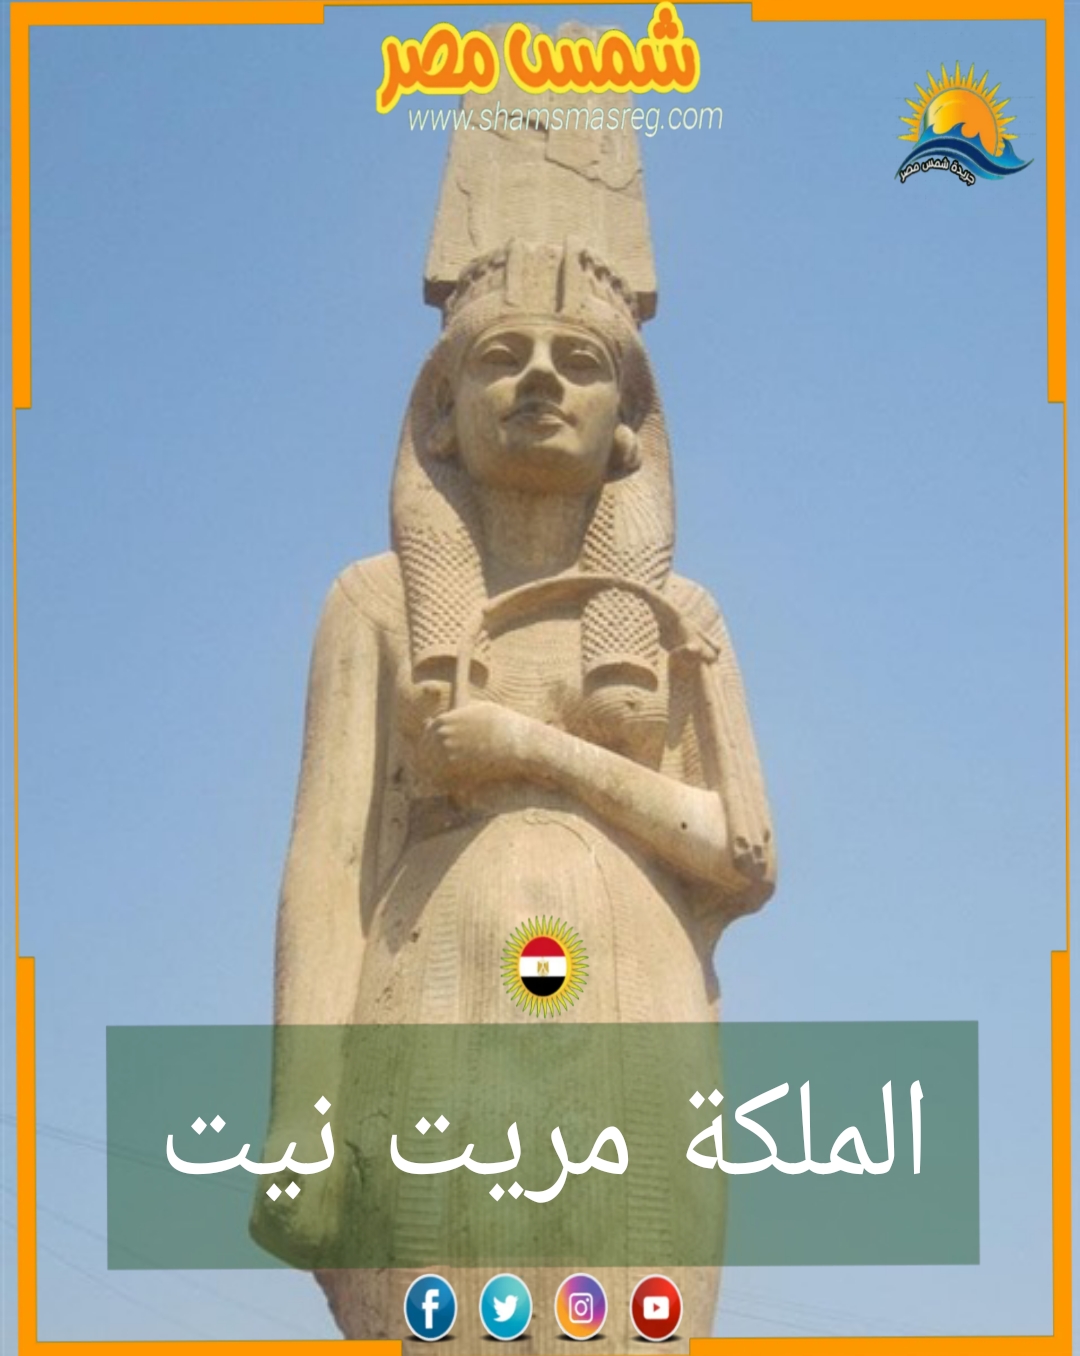 شمس مصر/ الملكة مريت نيت 